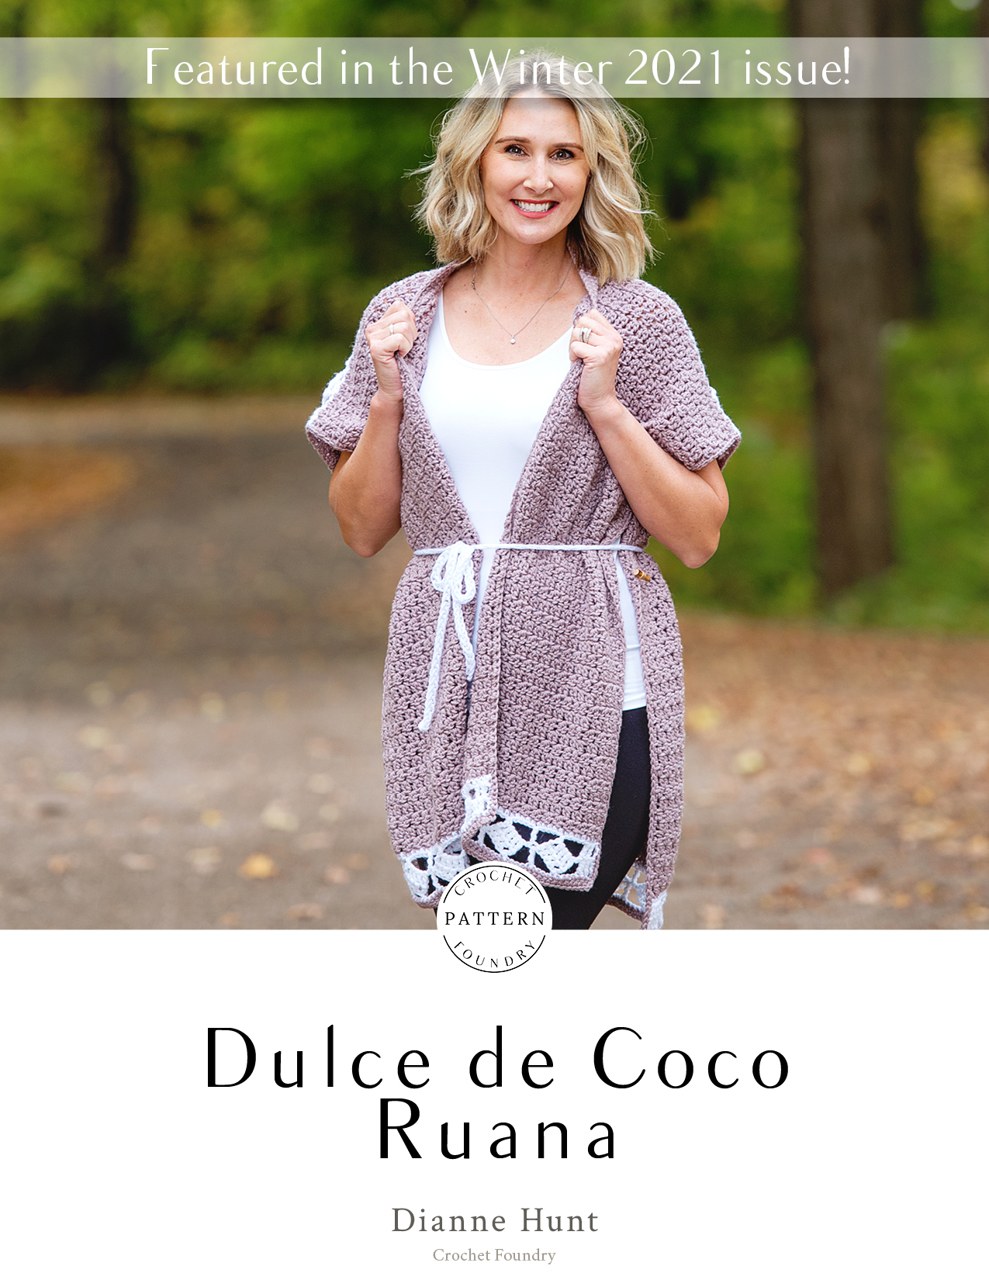 Dulce de Coco Ruana Crochet PDF Pattern by Dianne Hunt